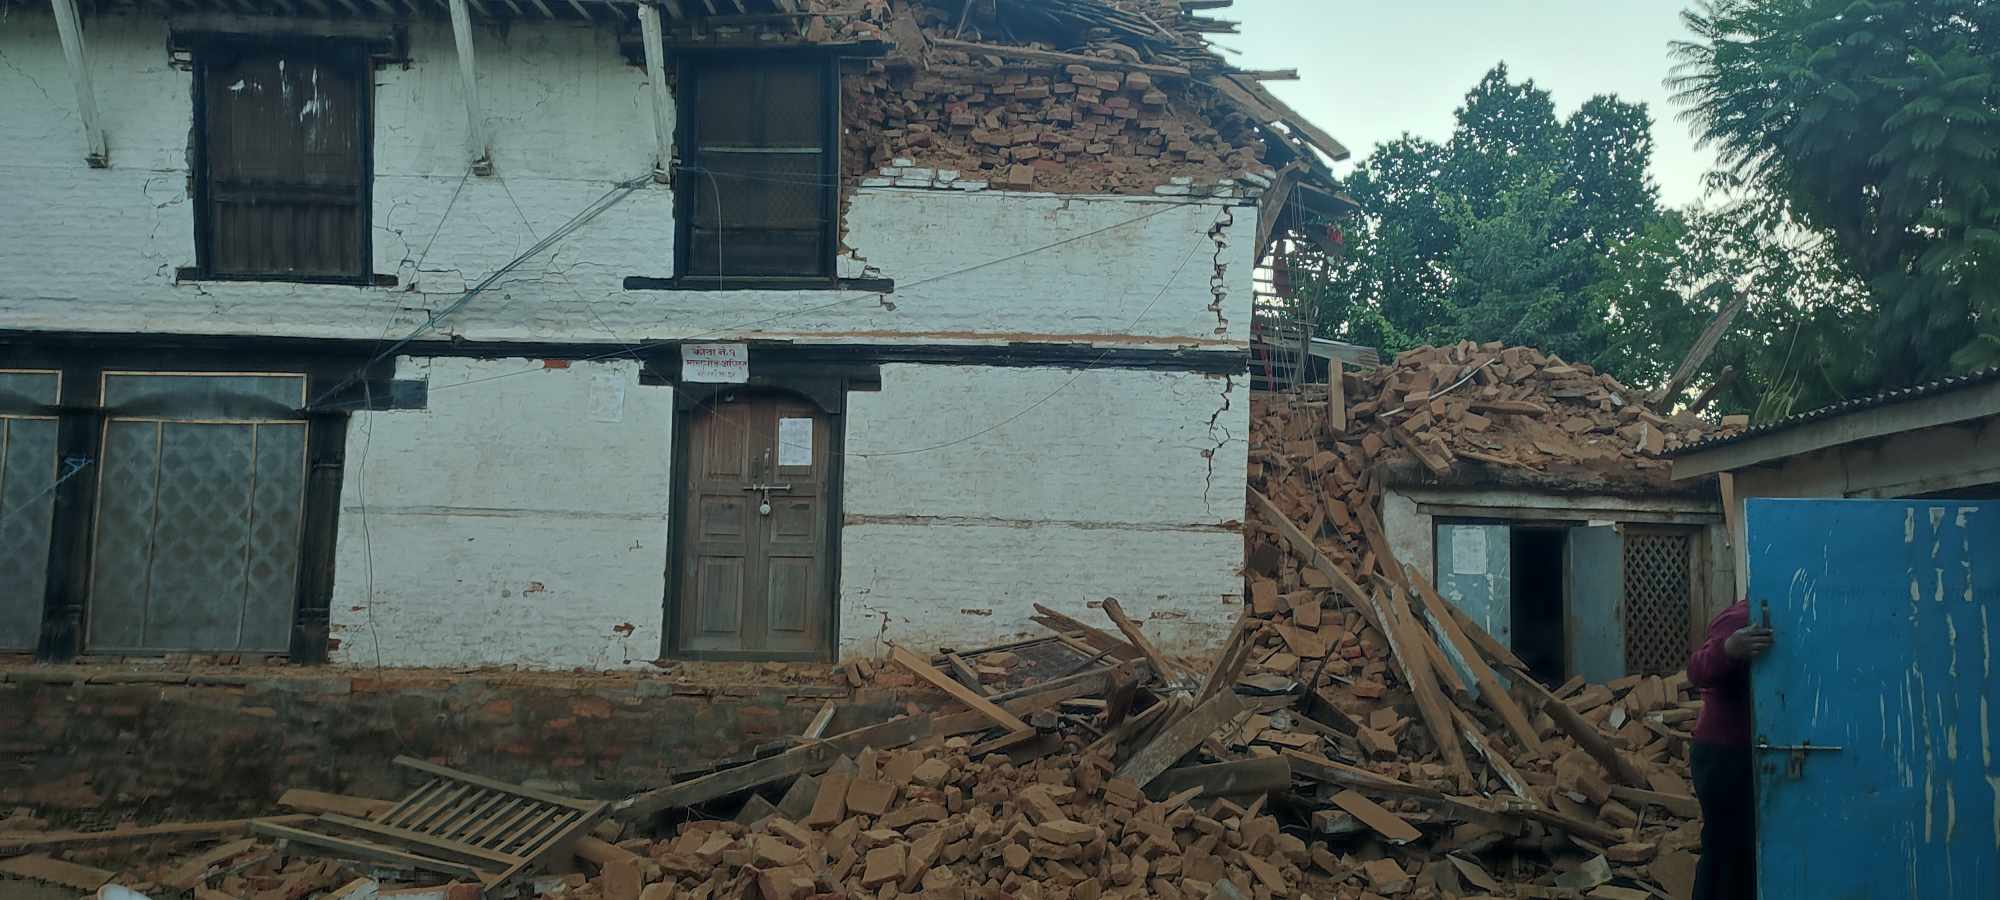 जाजरकोट र रुकुम पश्चिममा भुकम्पबाट मृत्यु हुनेको संख्या ७१ पुग्यो, १५३ घाइते